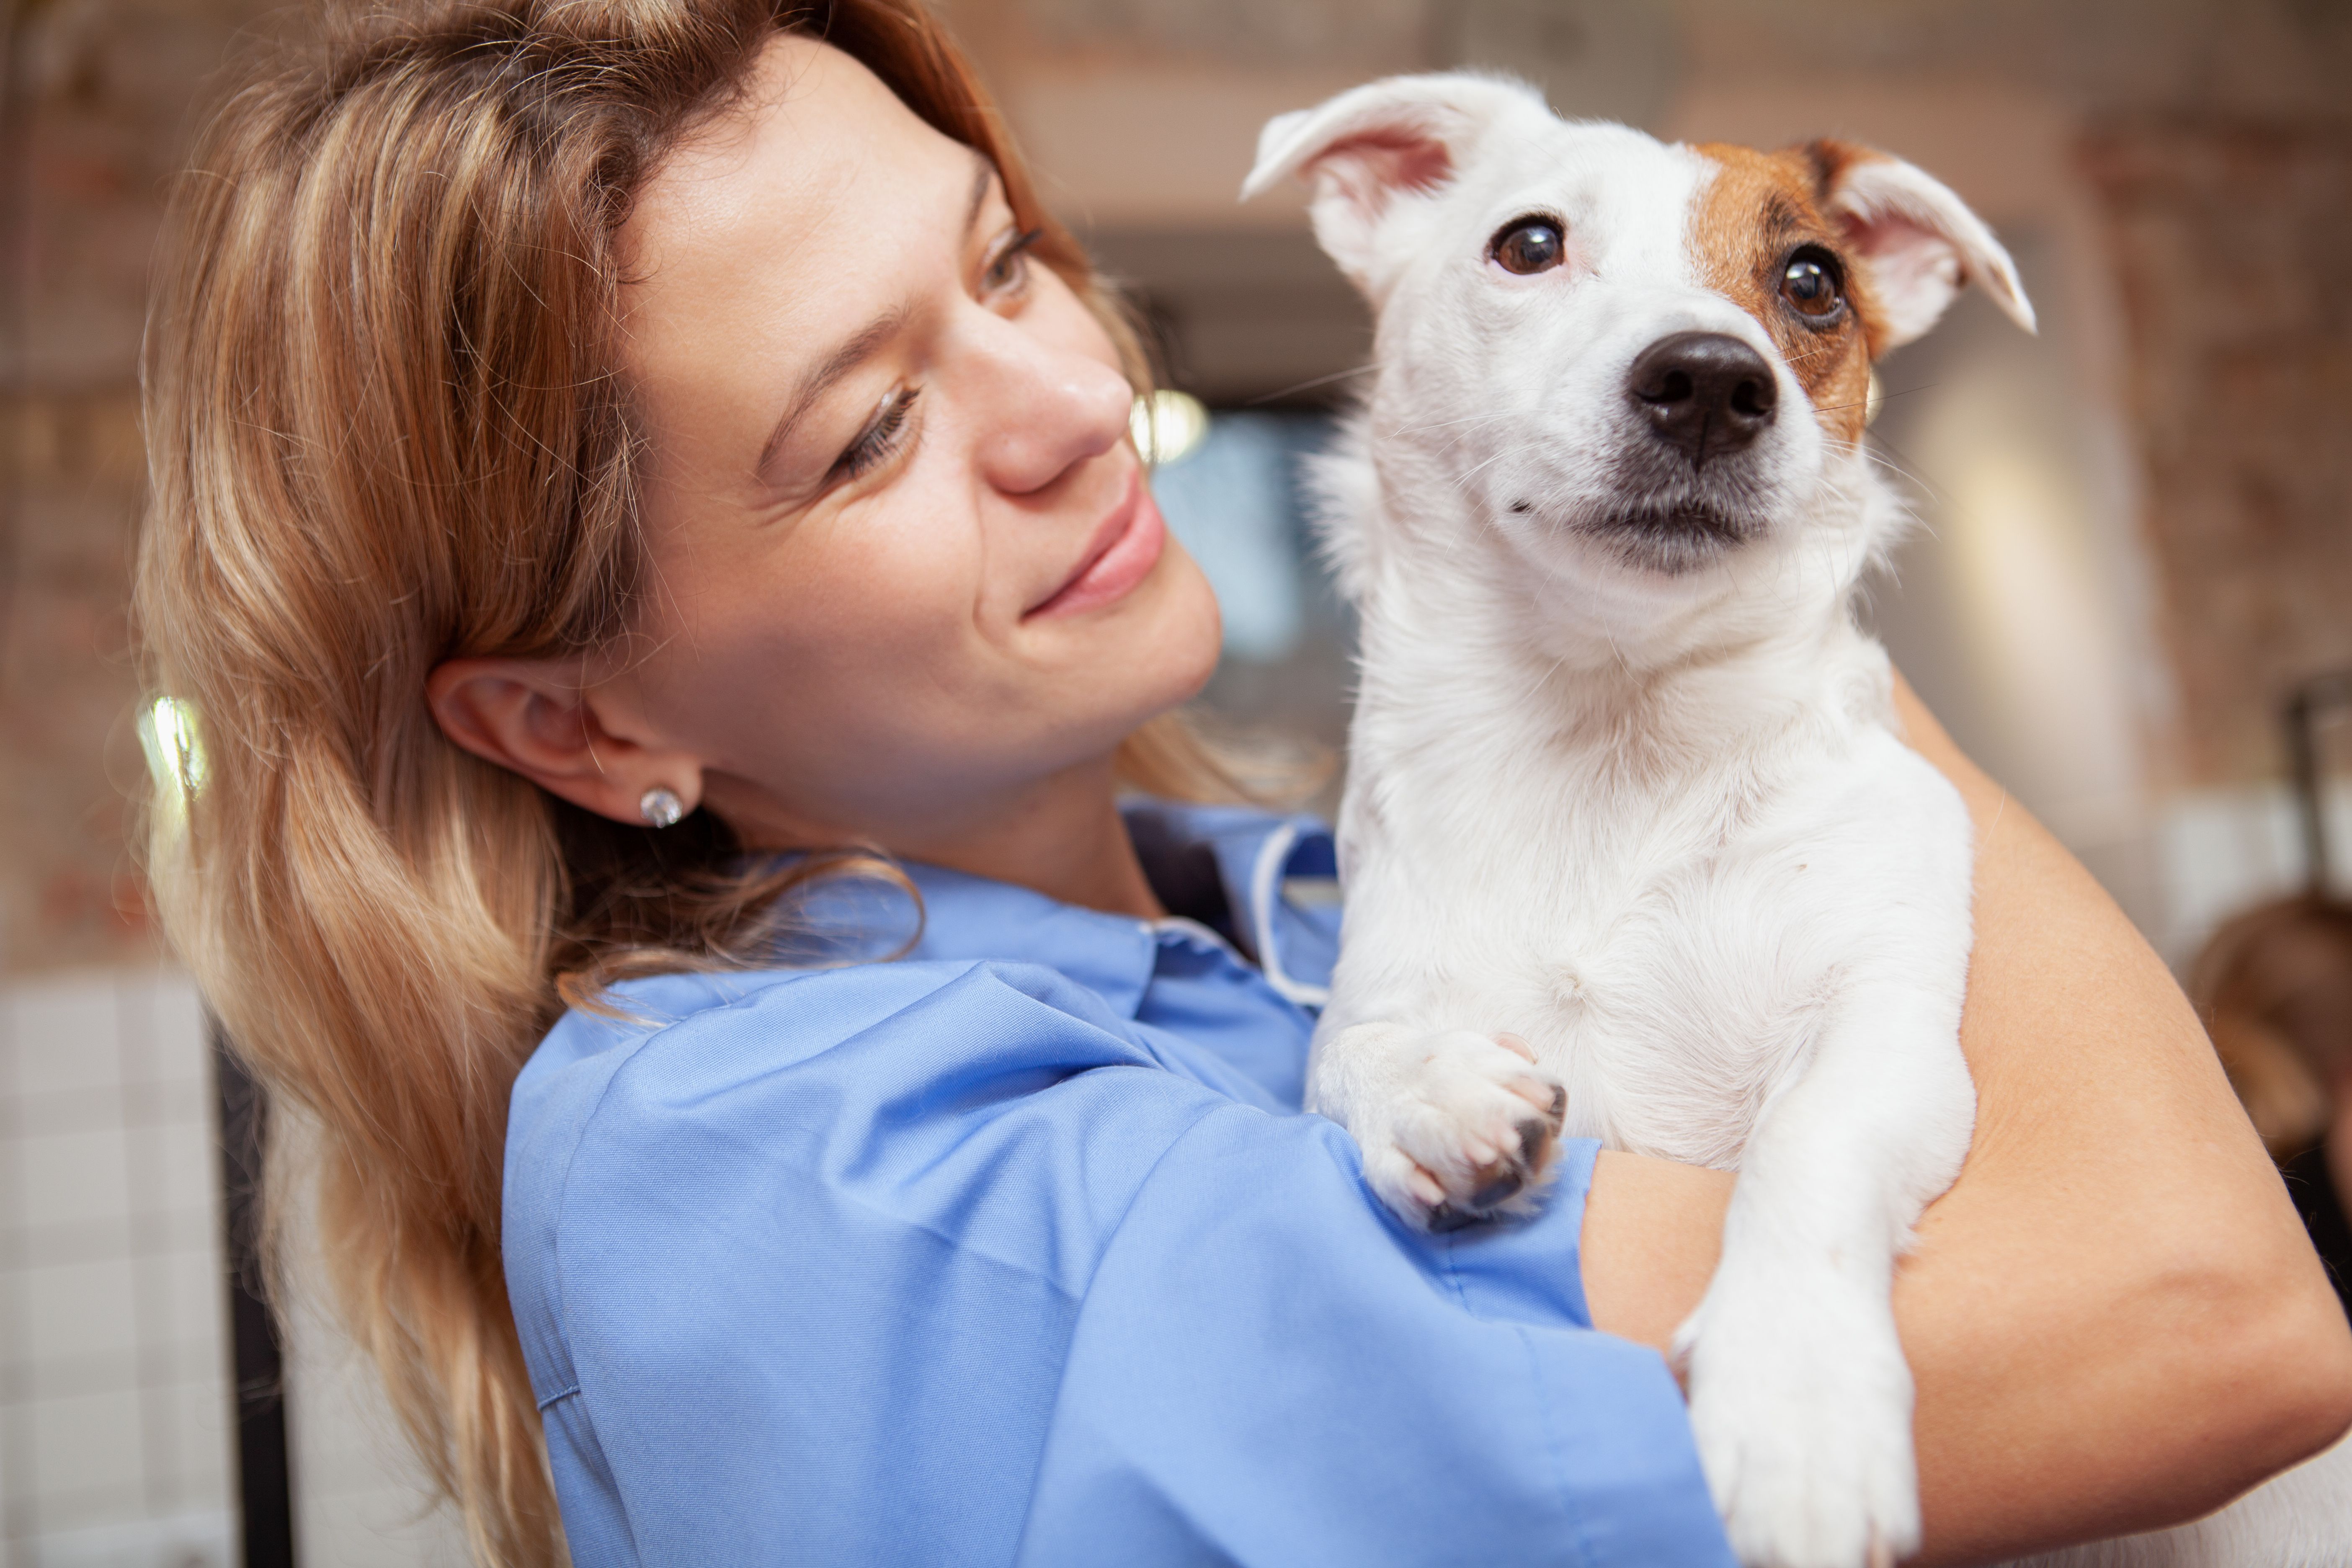 Ветеринар женщина. Медицинская собака. Женщина ветеринар фото. Счастливая собака в руках ветеринара женщины фото. Ветеринар экзамены